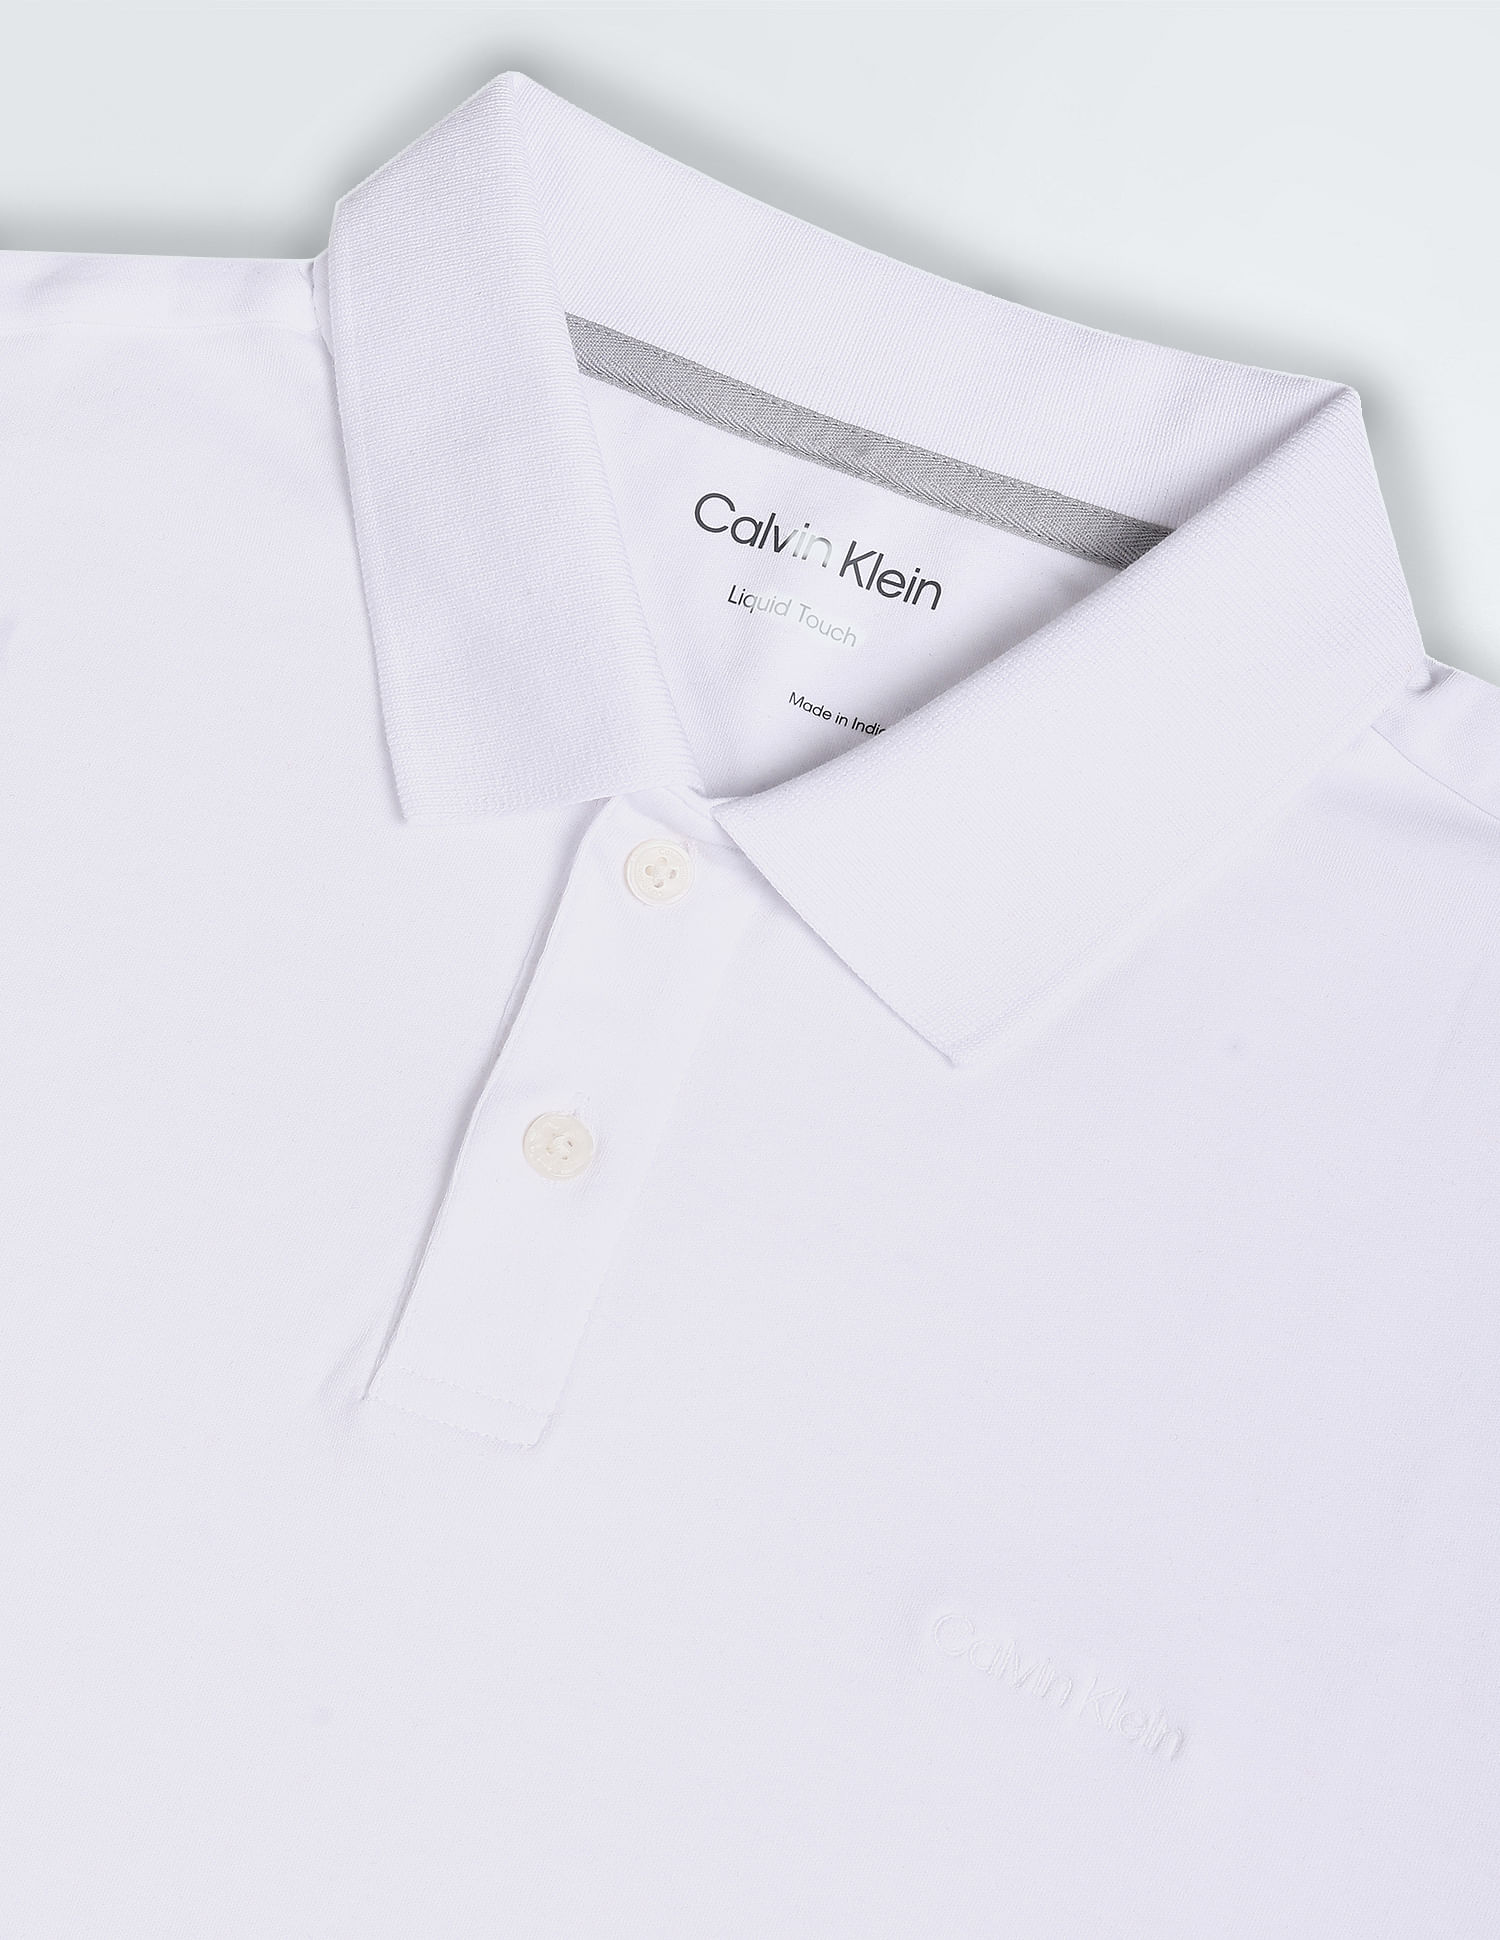 Buy Calvin Klein Cotton Liquid Touch Solid Polo Shirt - NNNOW.com